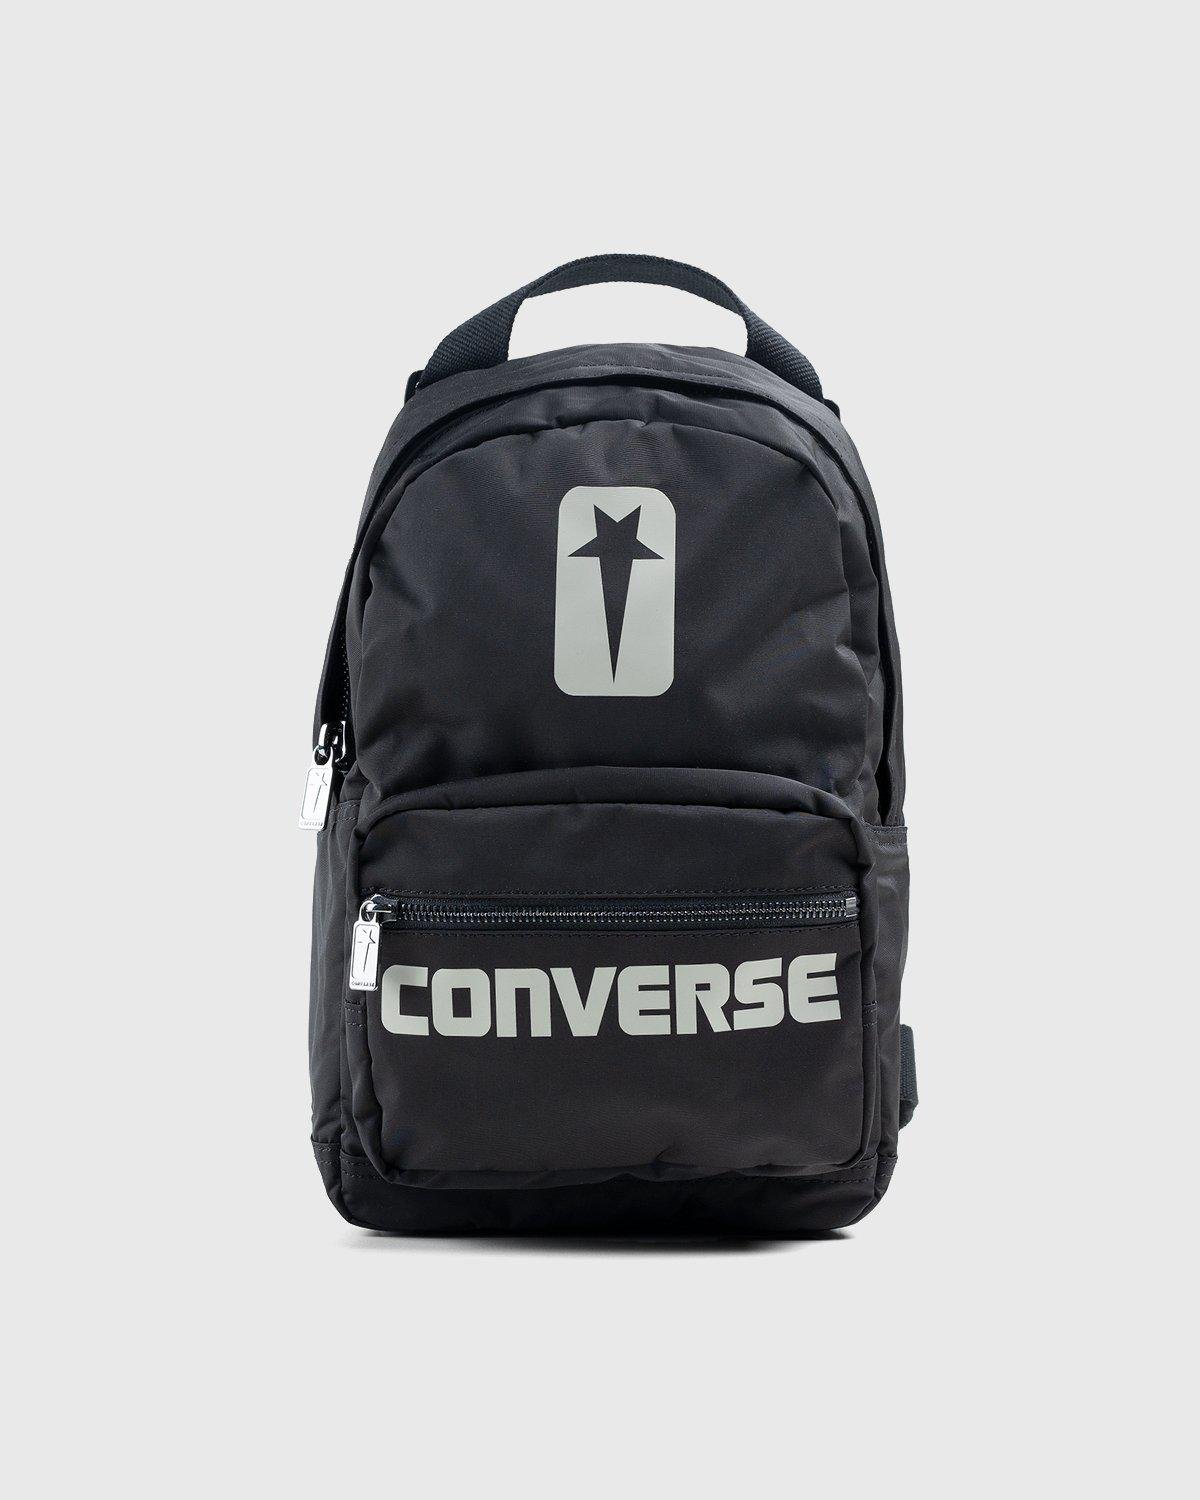 DRKSHDW Backpack Black/Pelican by CONVERSE X RICK OWENS